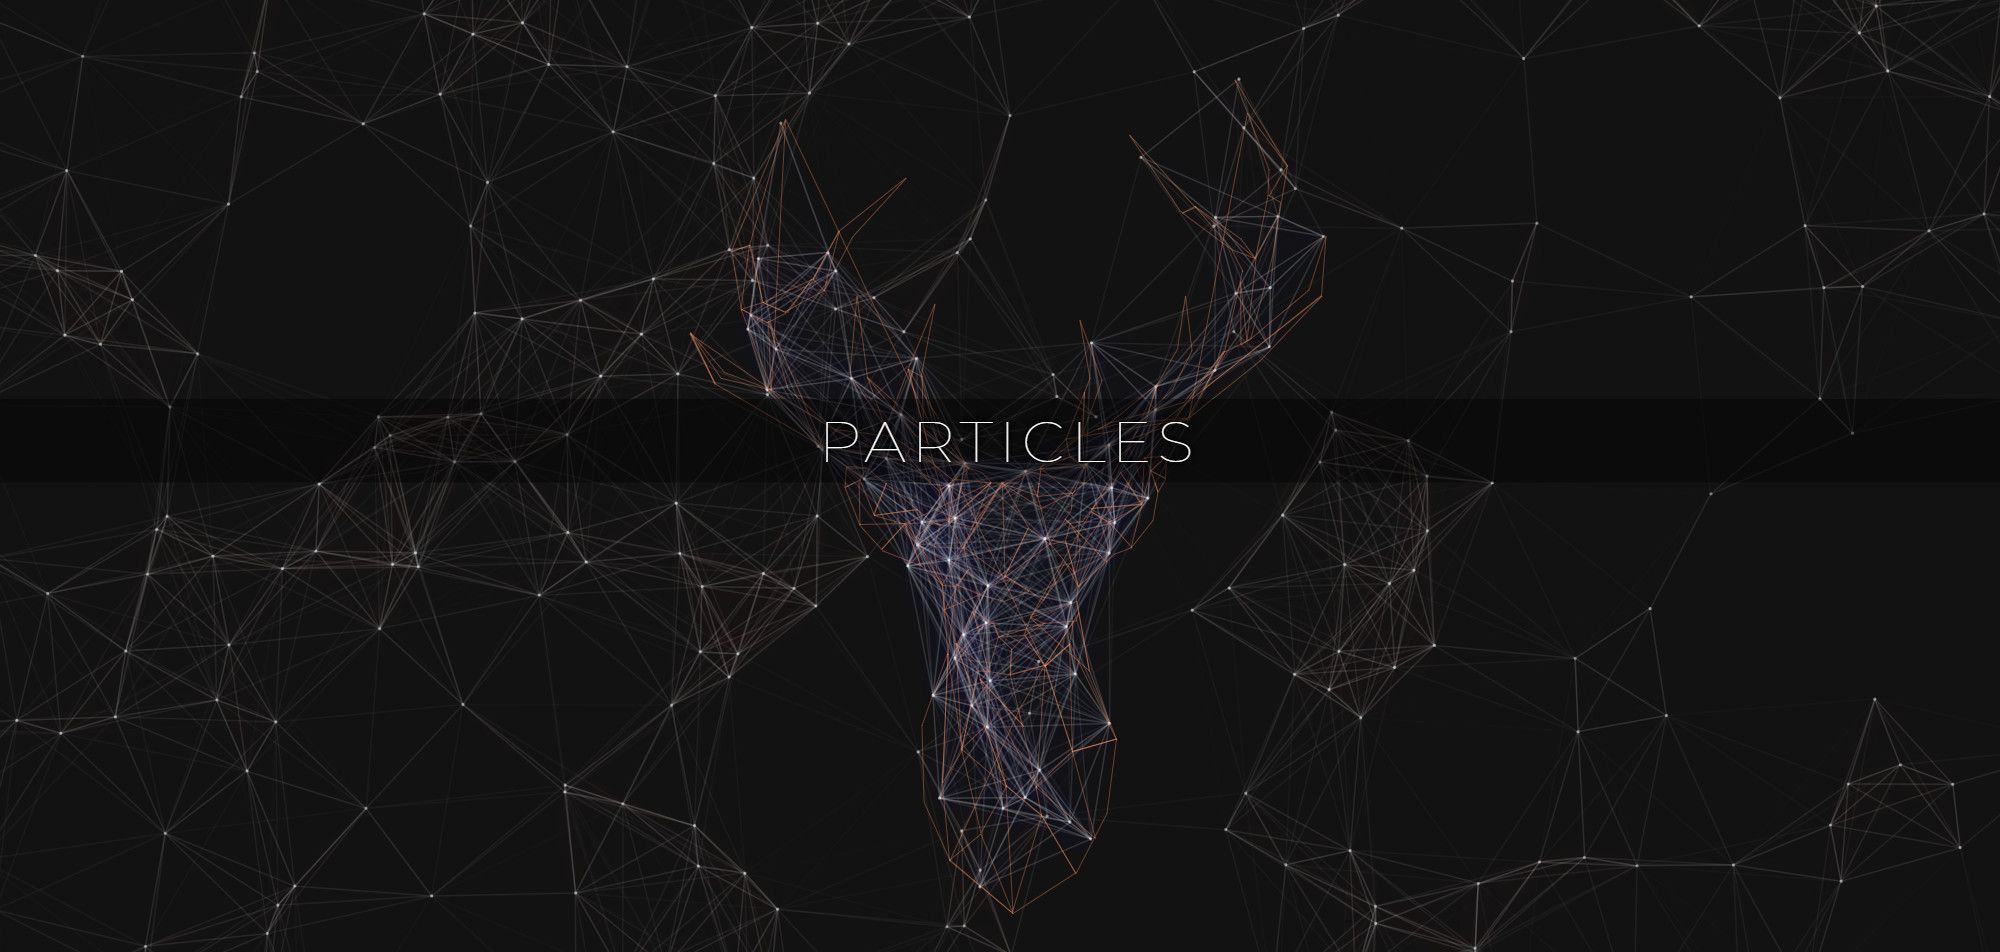 react-particles-js